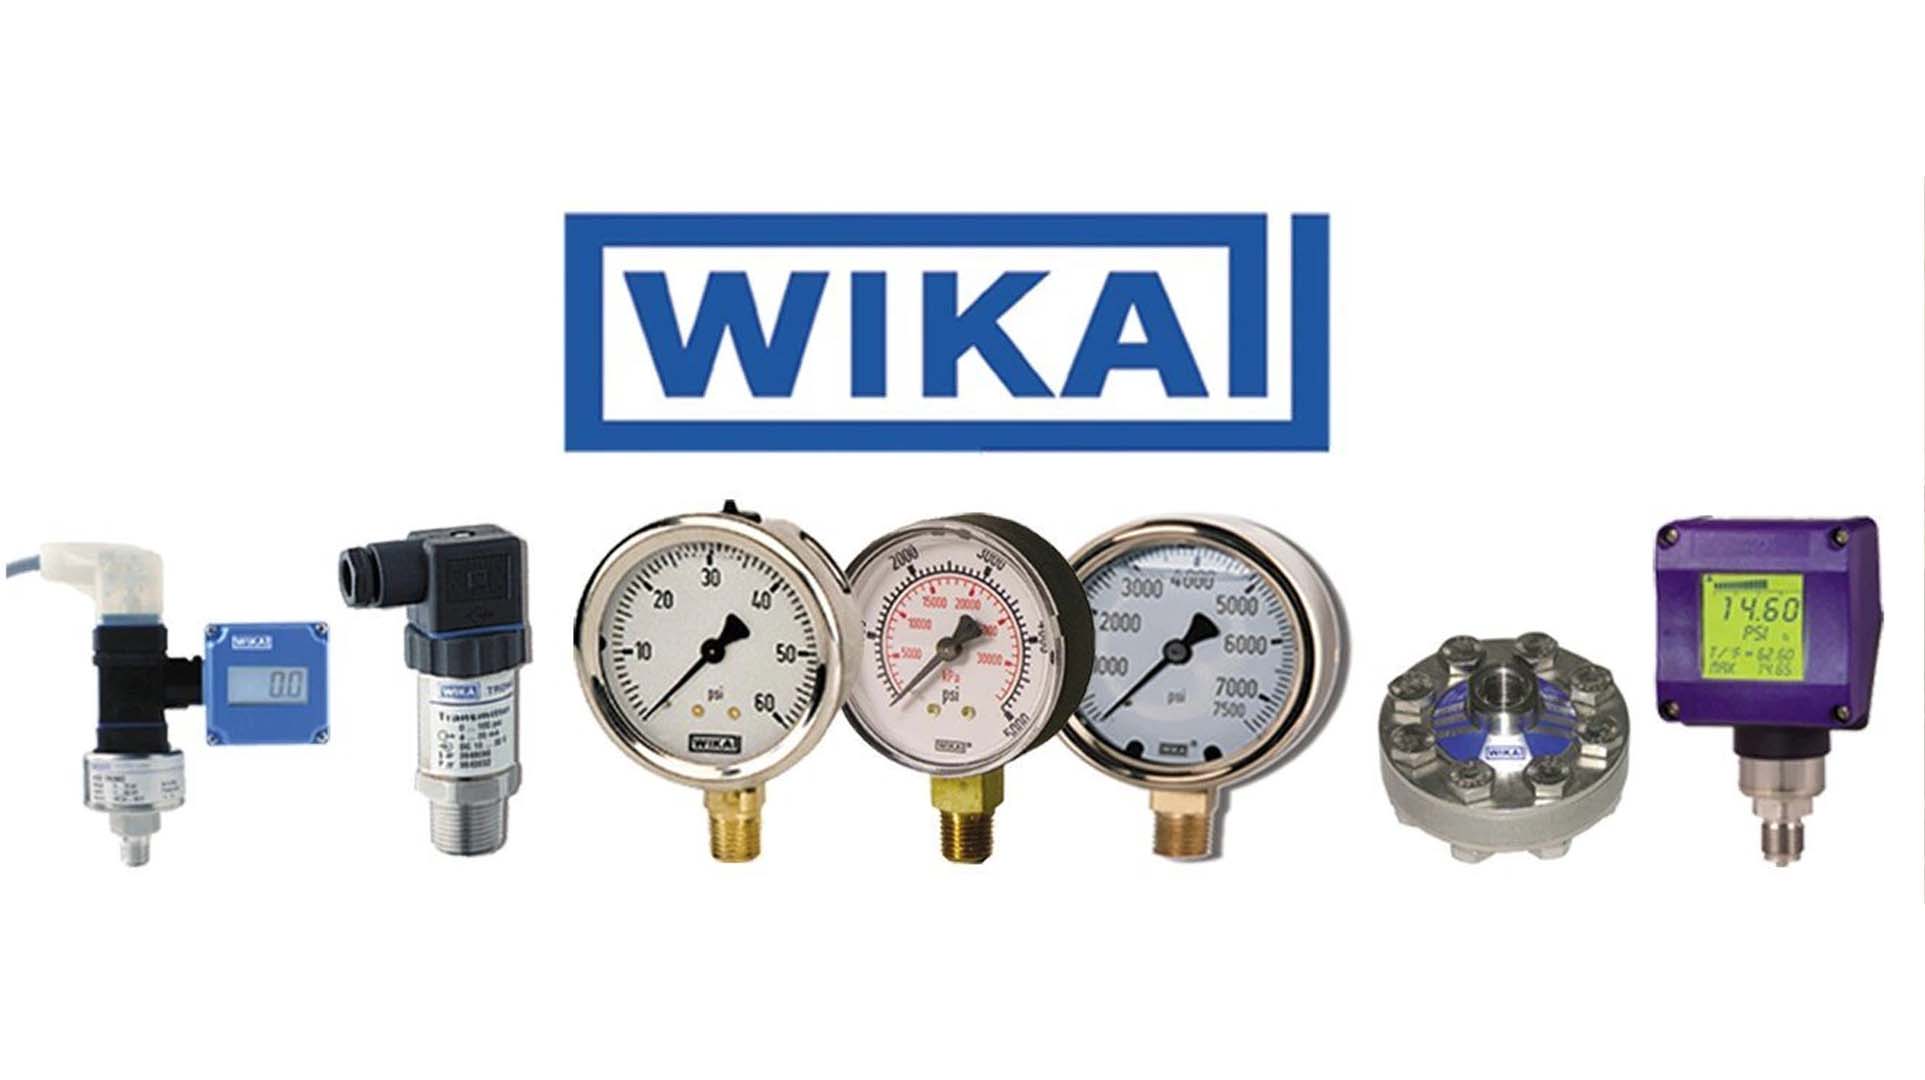 گیج فشار ویکا (WIKA) 0-10 بار صفحه 4 سانتی متر